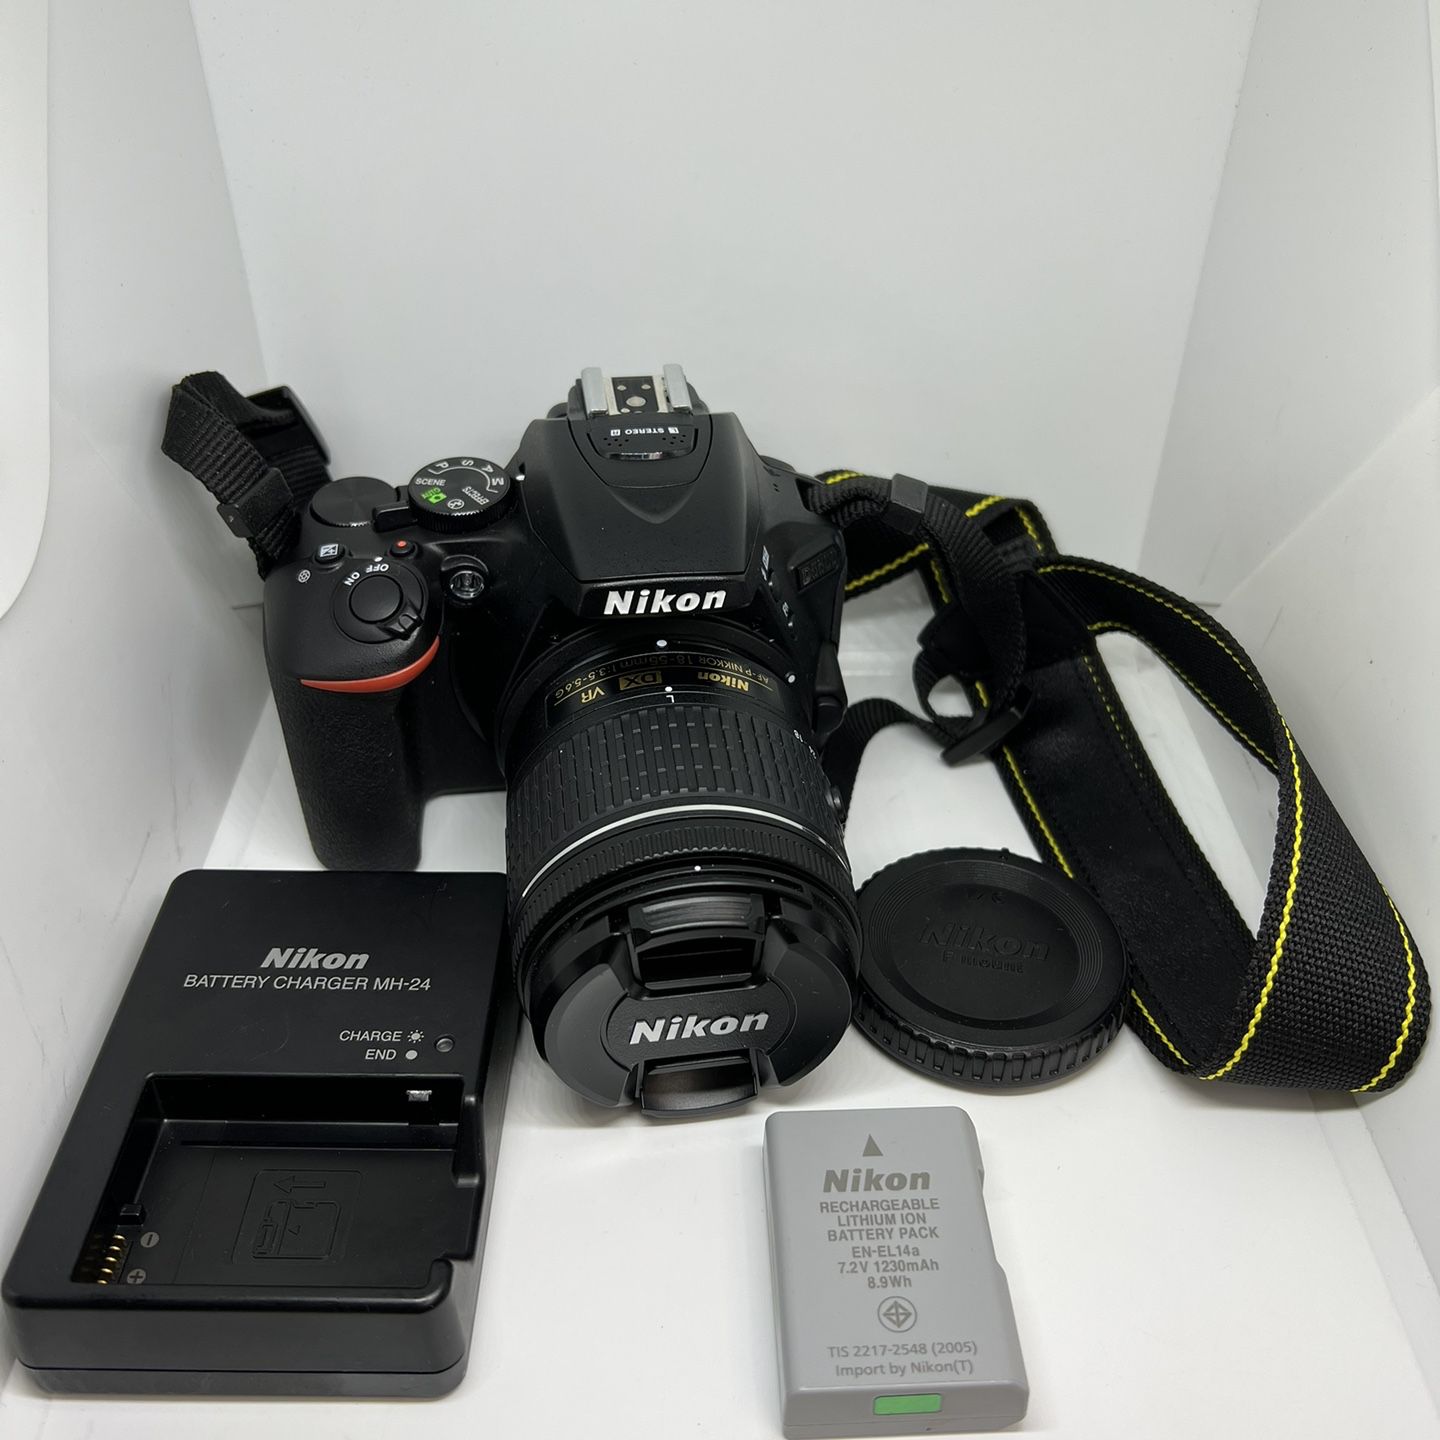 Nikon D5600 DSLR Camera with 18-55mm VR Lens Kit,nikon,nikon D5600 